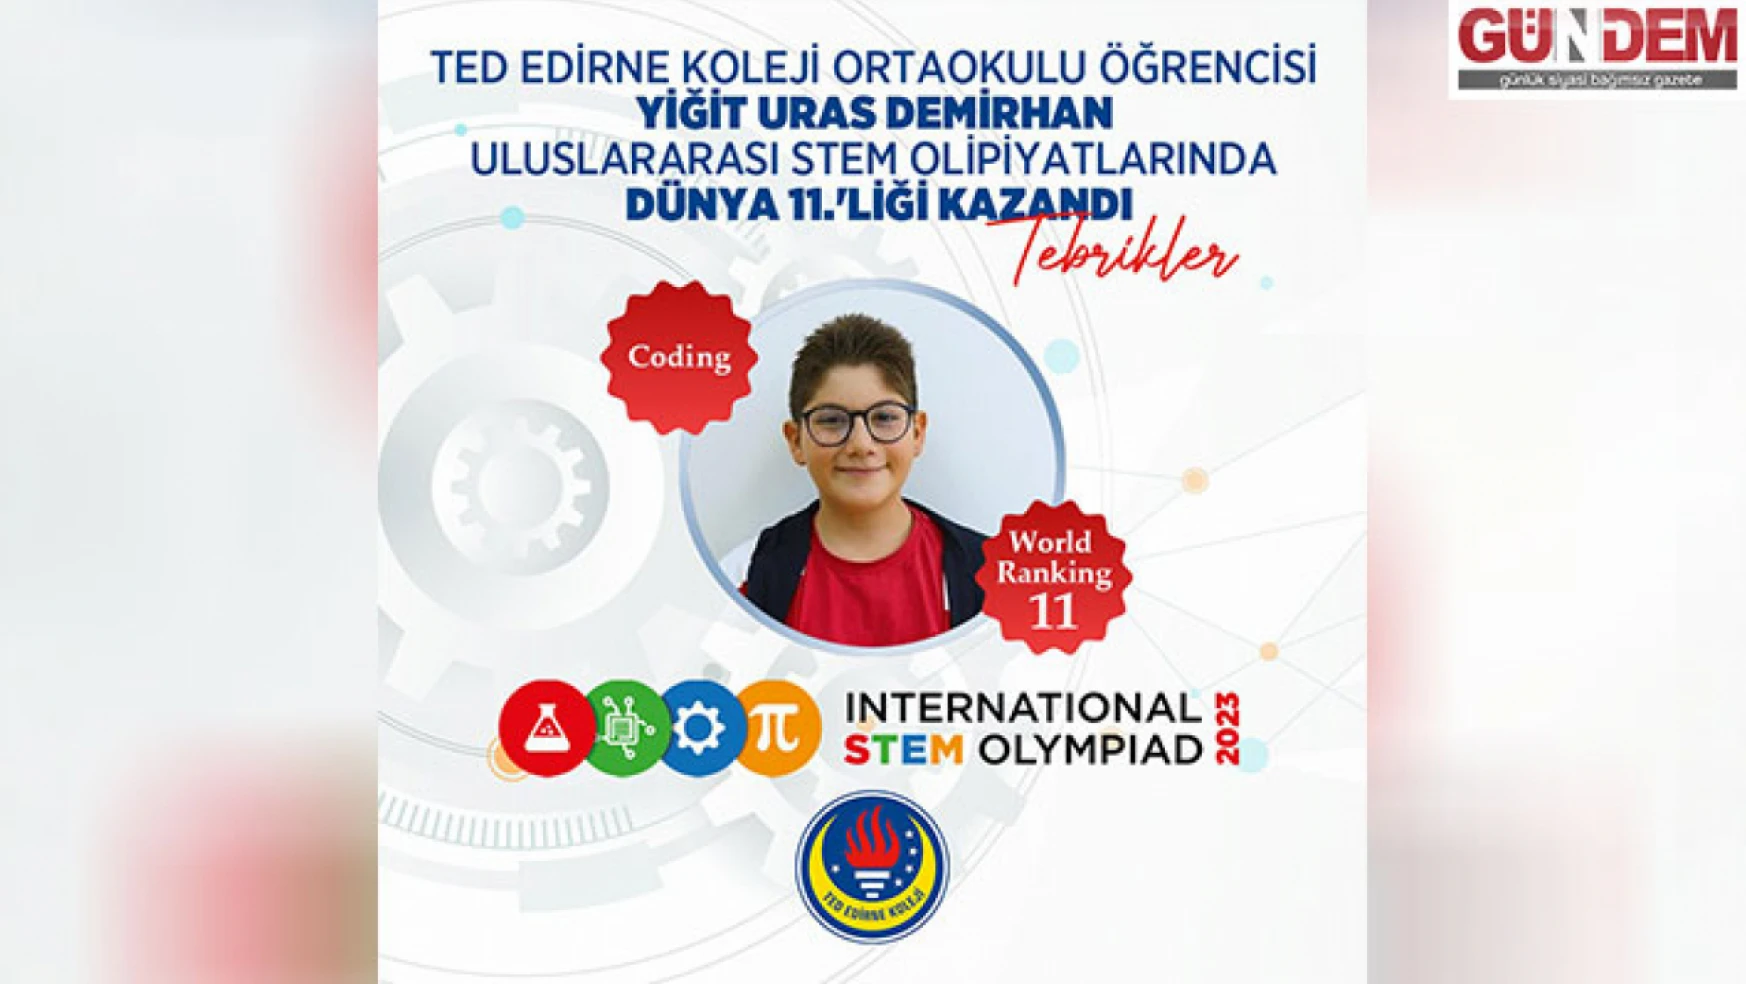 TED Edirne Koleji öğrencisi kodlama kategorisinde büyük başarı elde etti